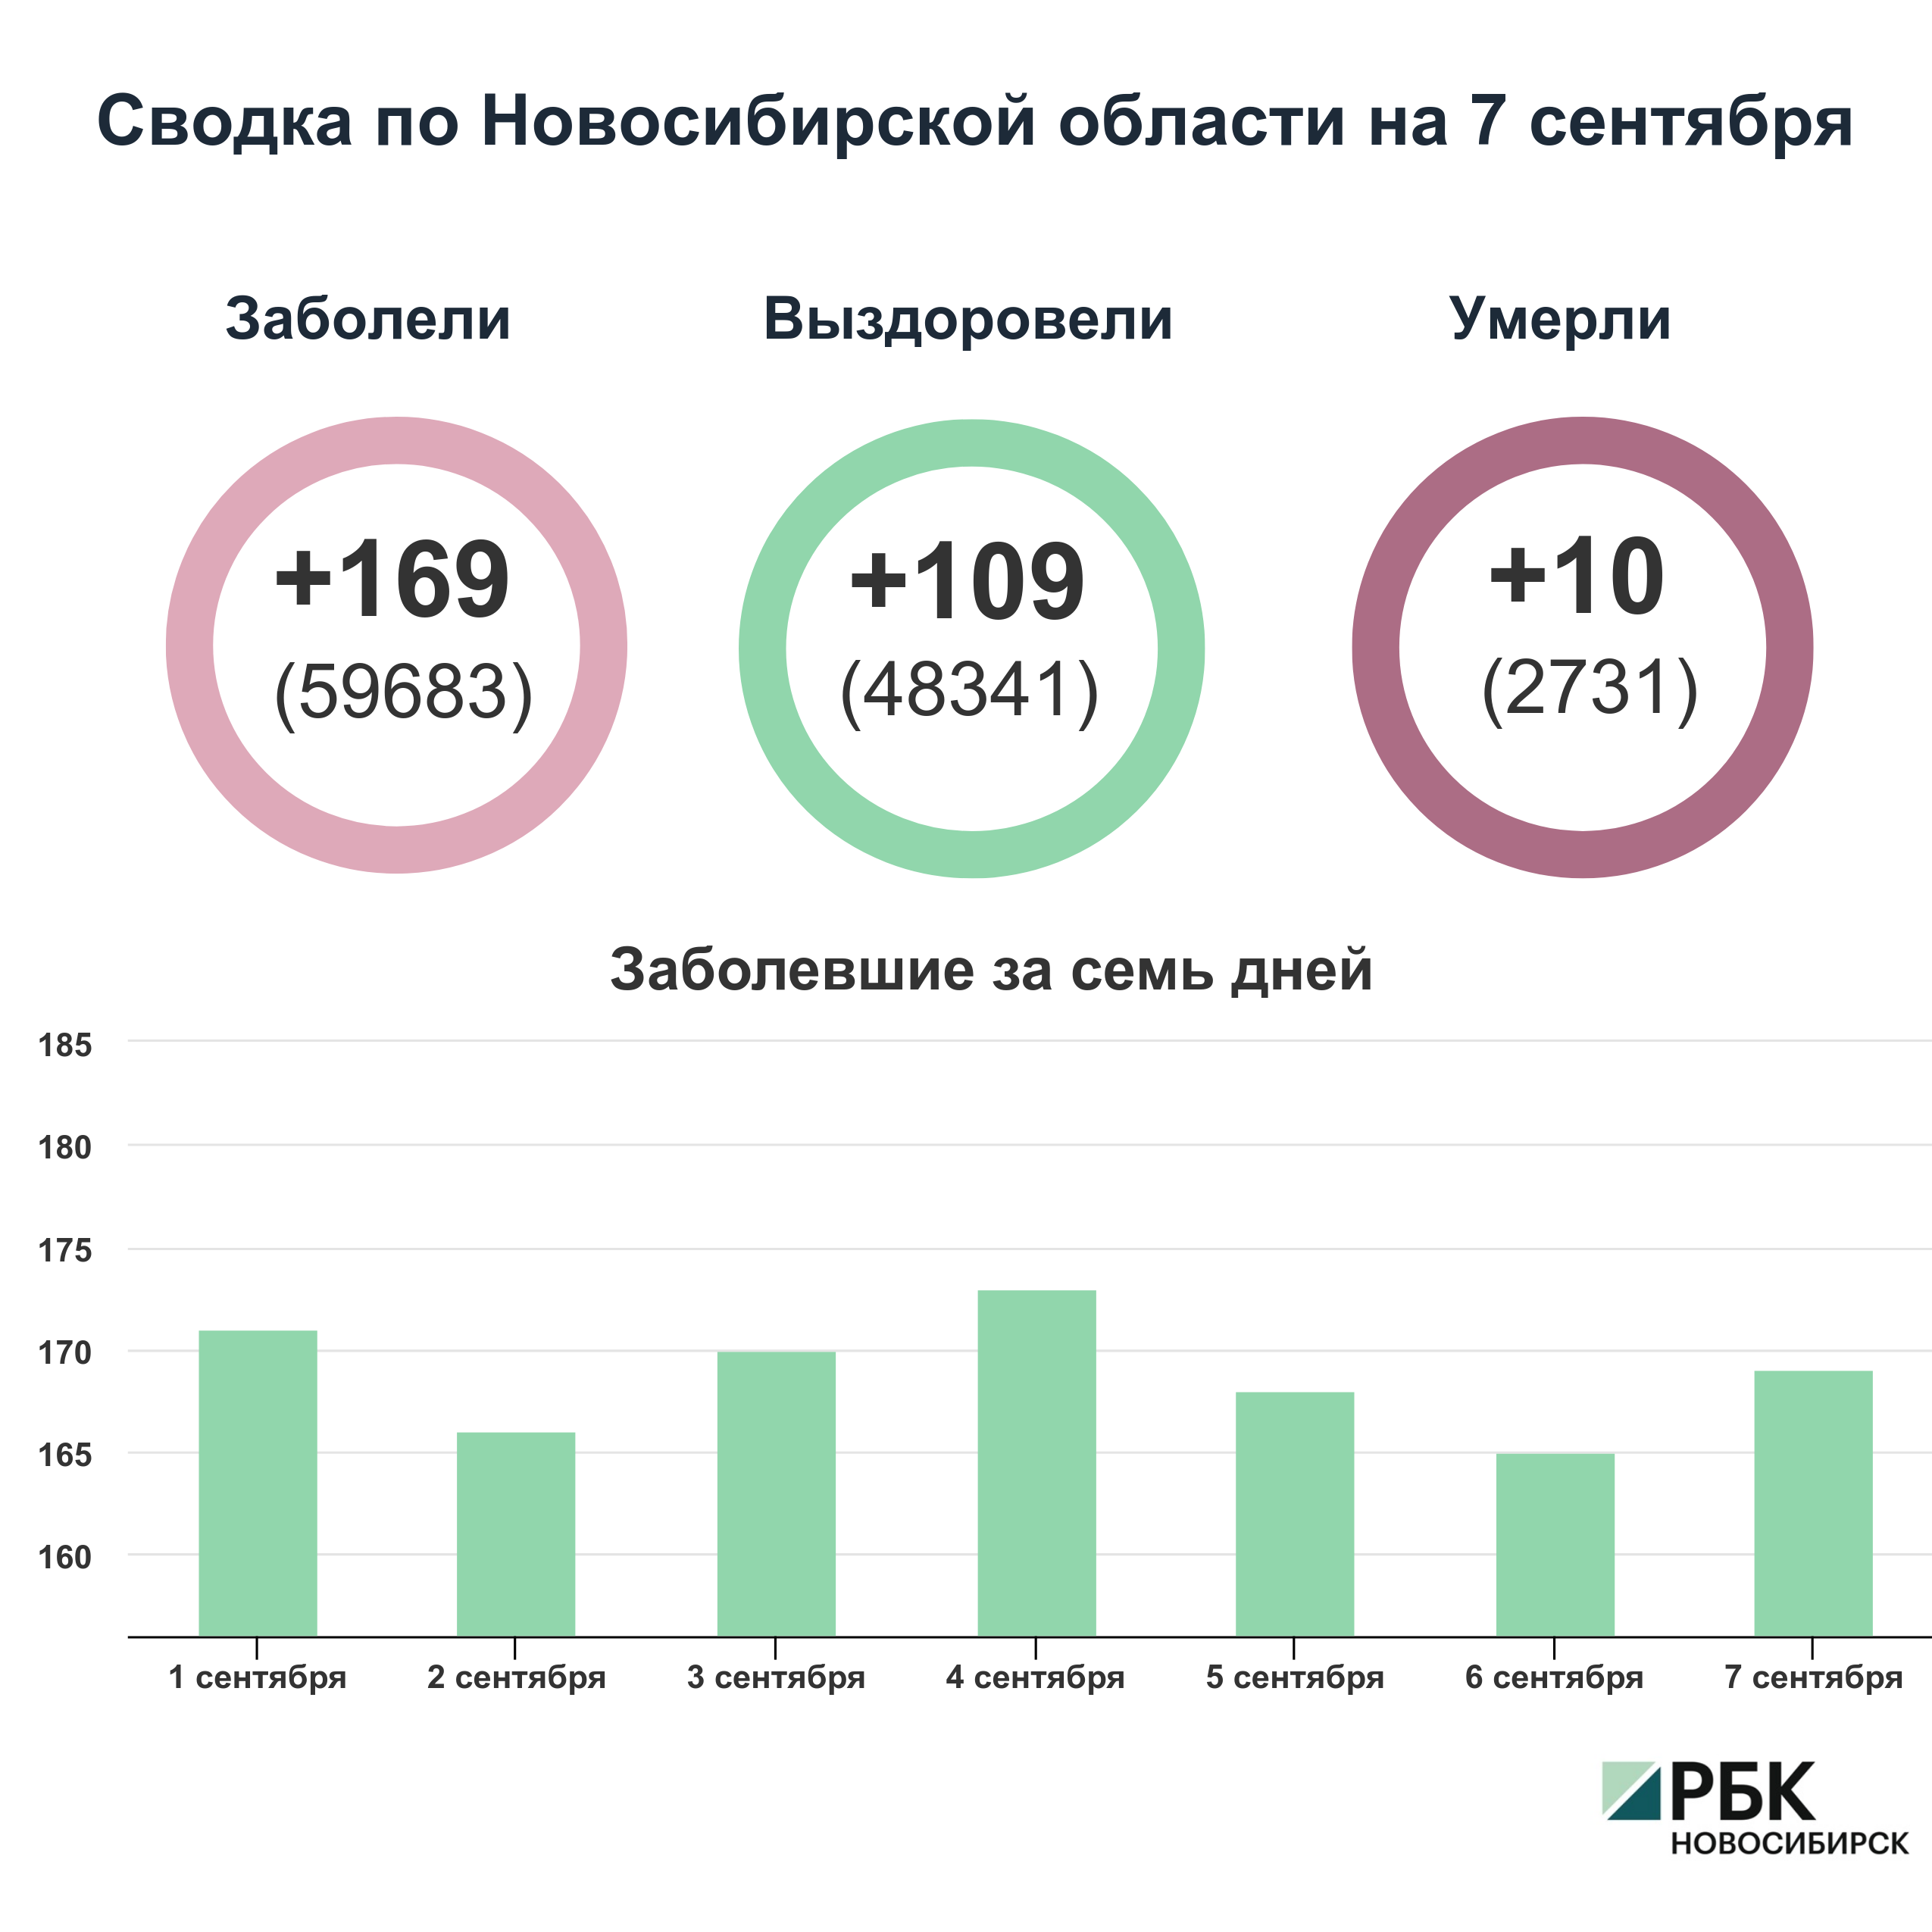 Коронавирус в Новосибирске: сводка на 7 сентября